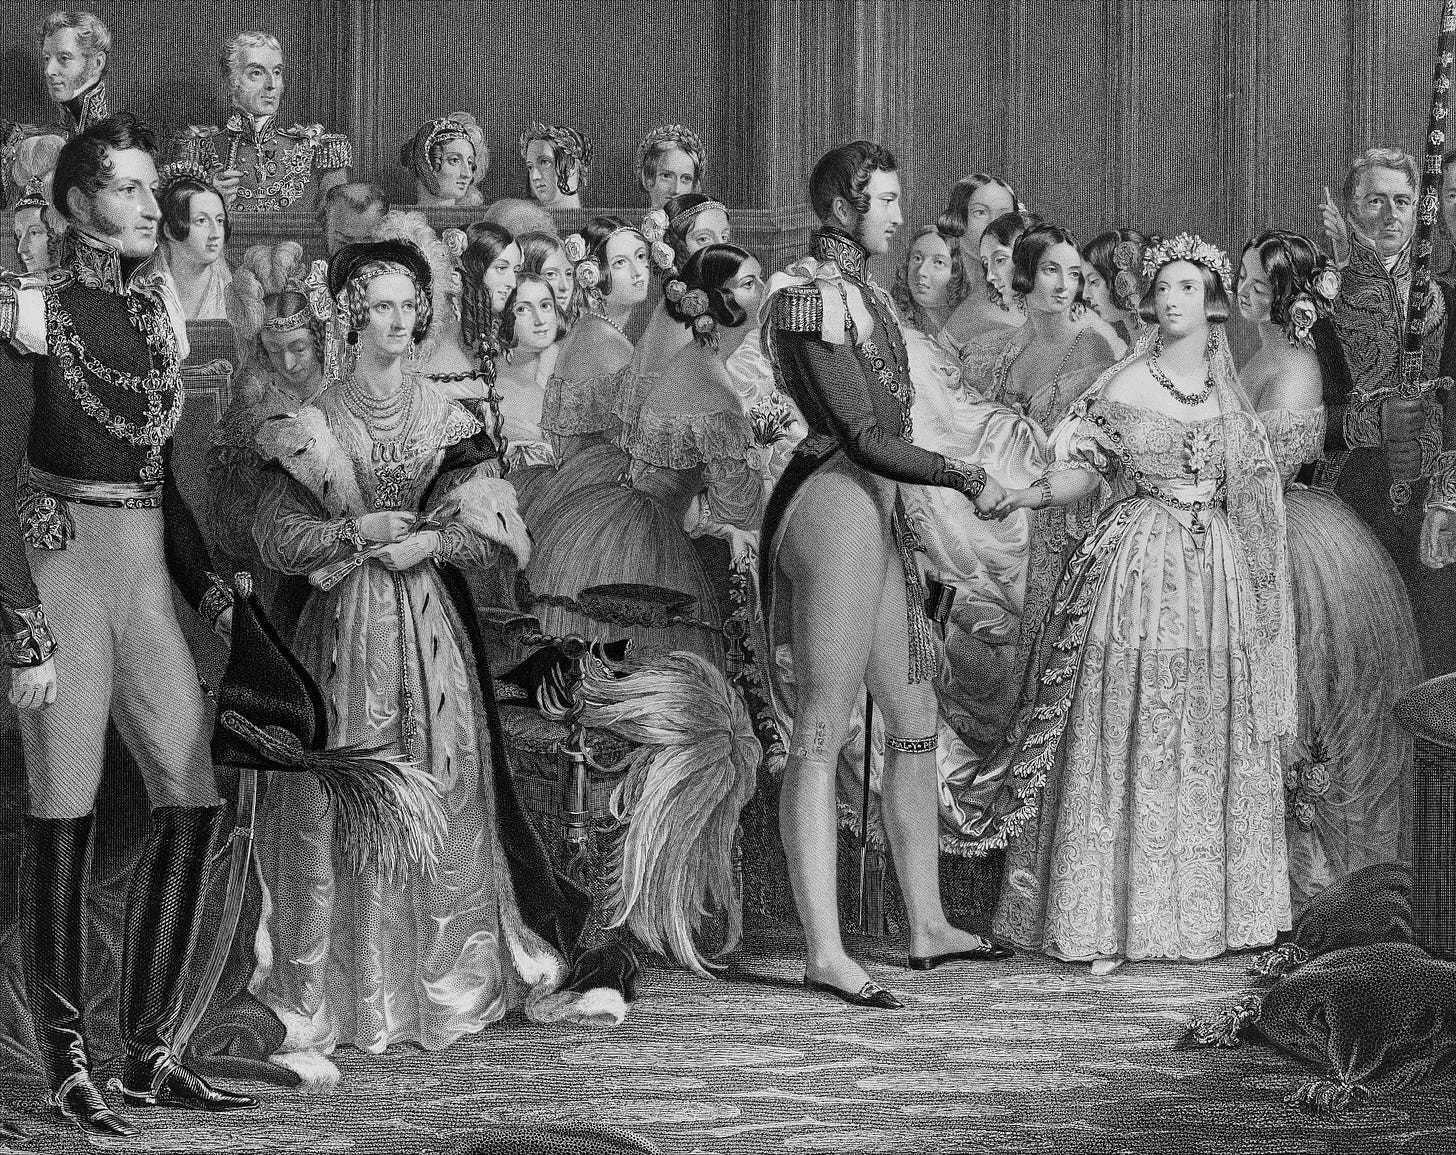 Mariage de la reine Victoria et du Prince Albert, 1844, Londres, peinture